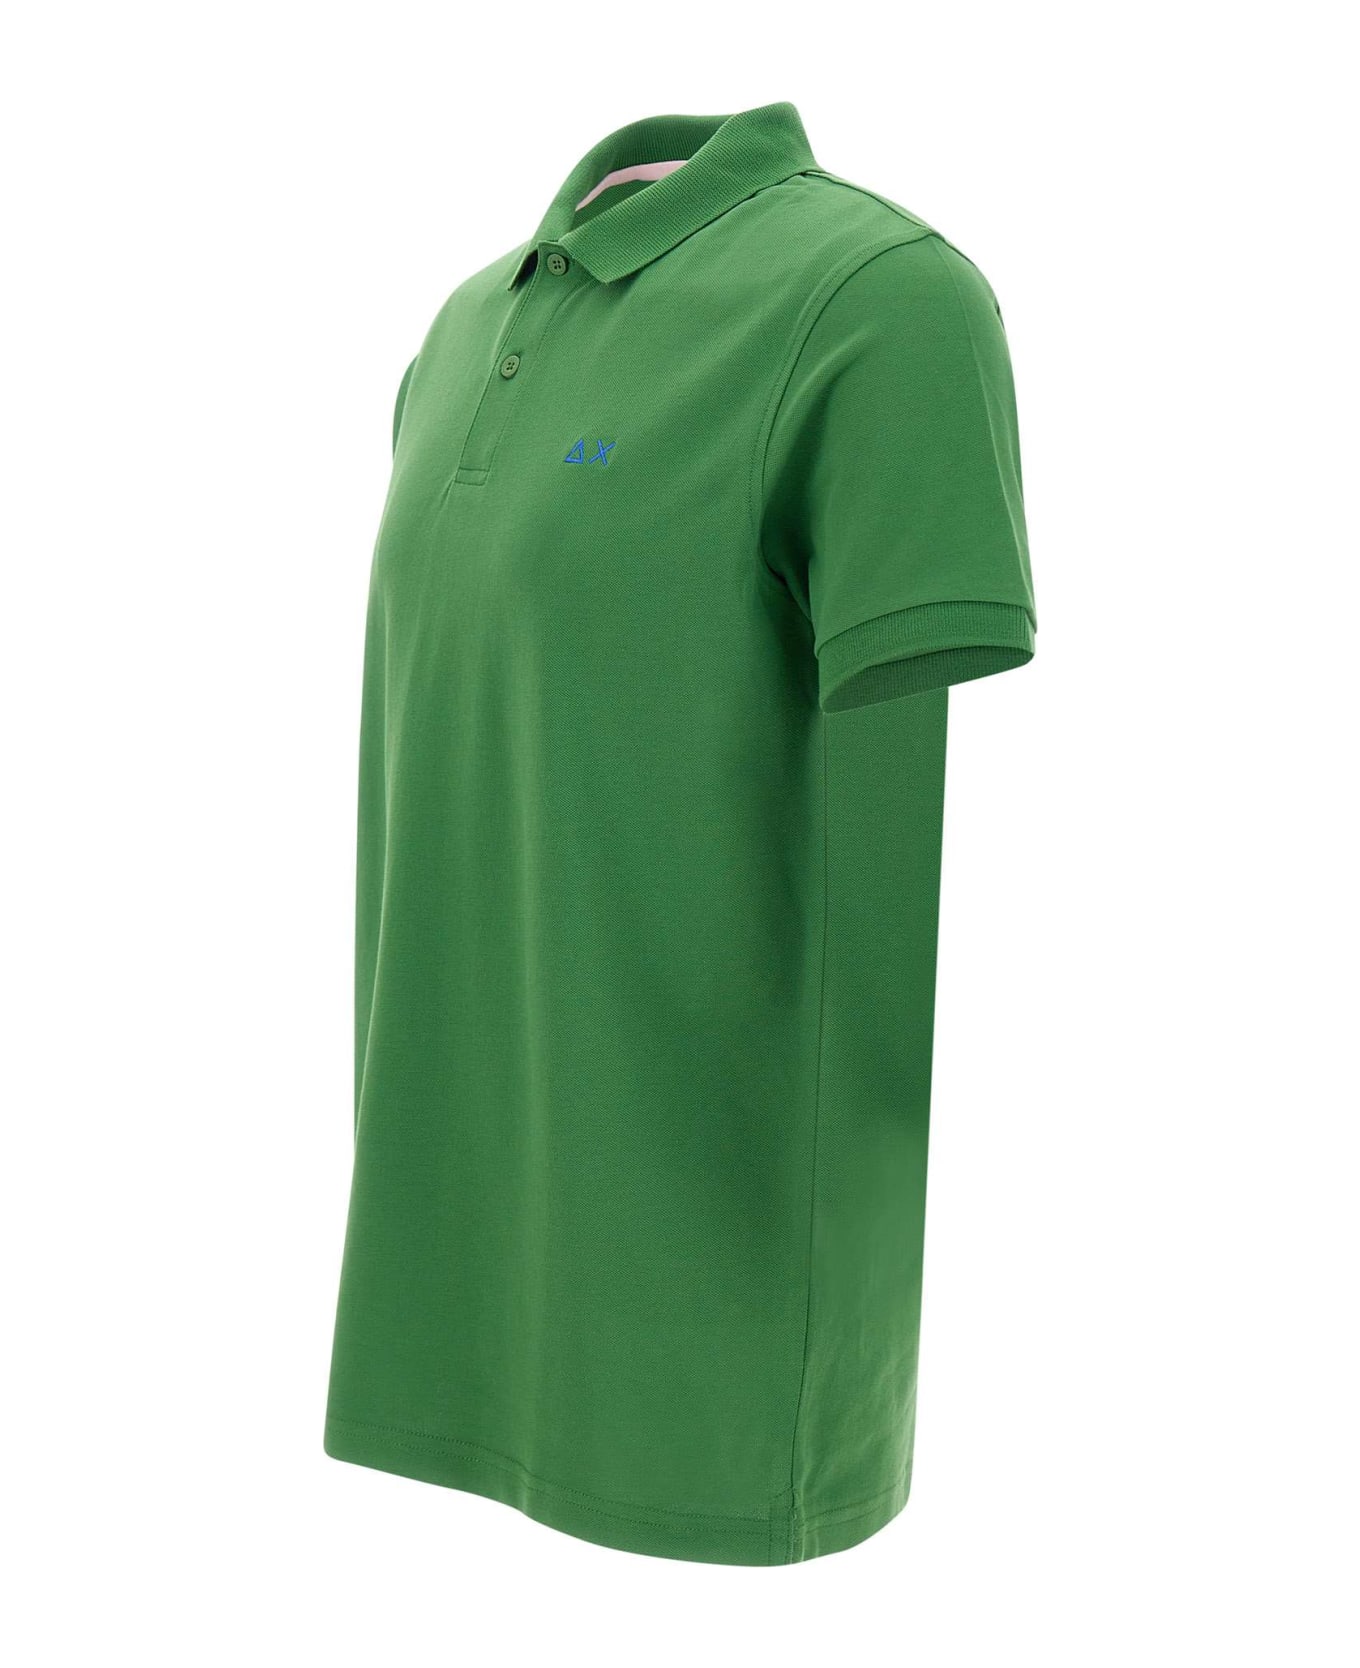 Sun 68 "solid" Piquet Cotton Polo Shirt - GREEN